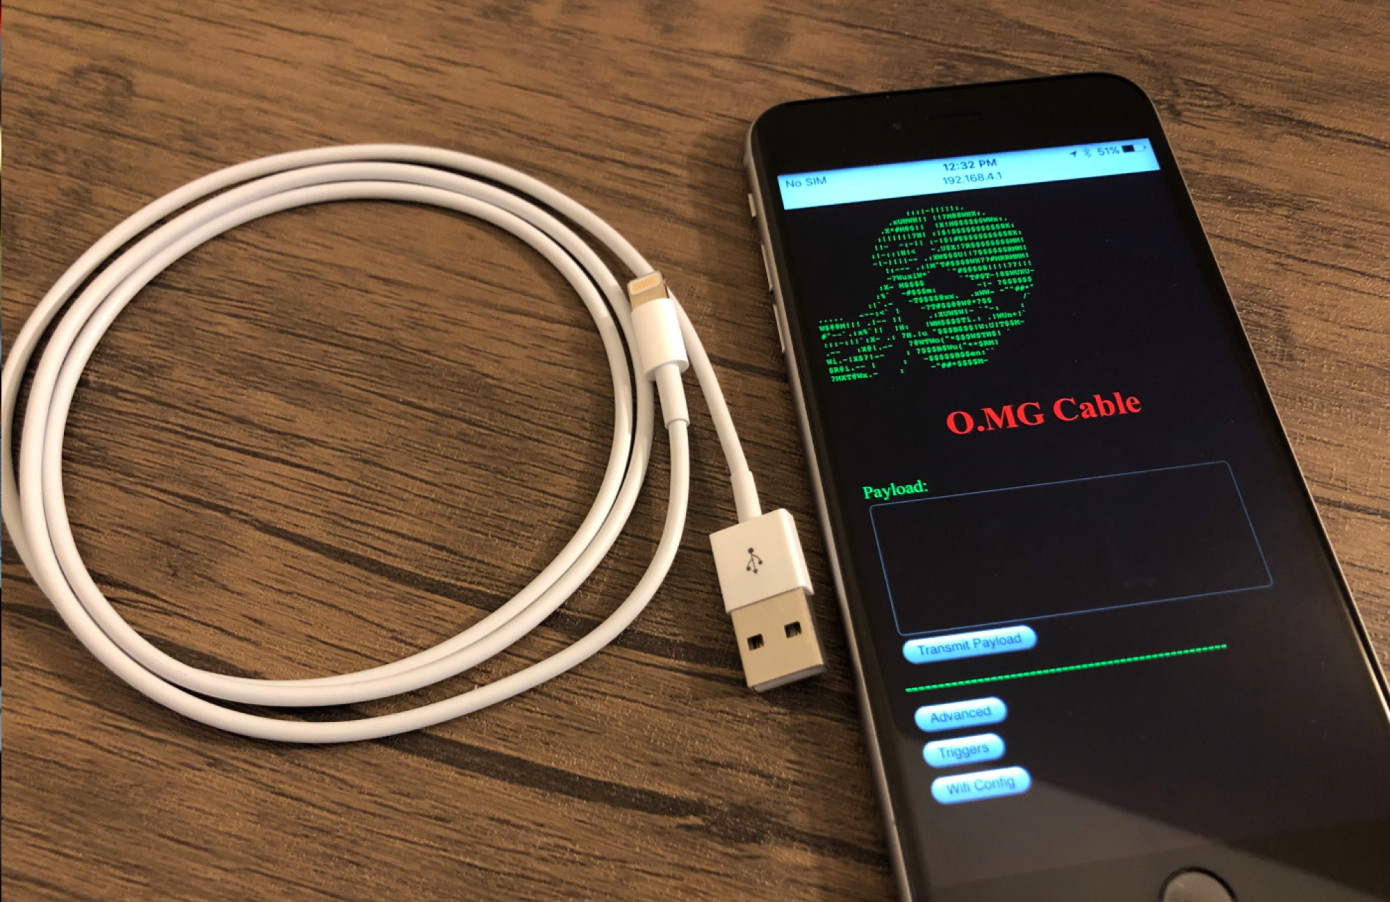 Фейковый зарядный кабель для iPhone как элемент взлома ноутбуков — «O.MG Cable» - 1